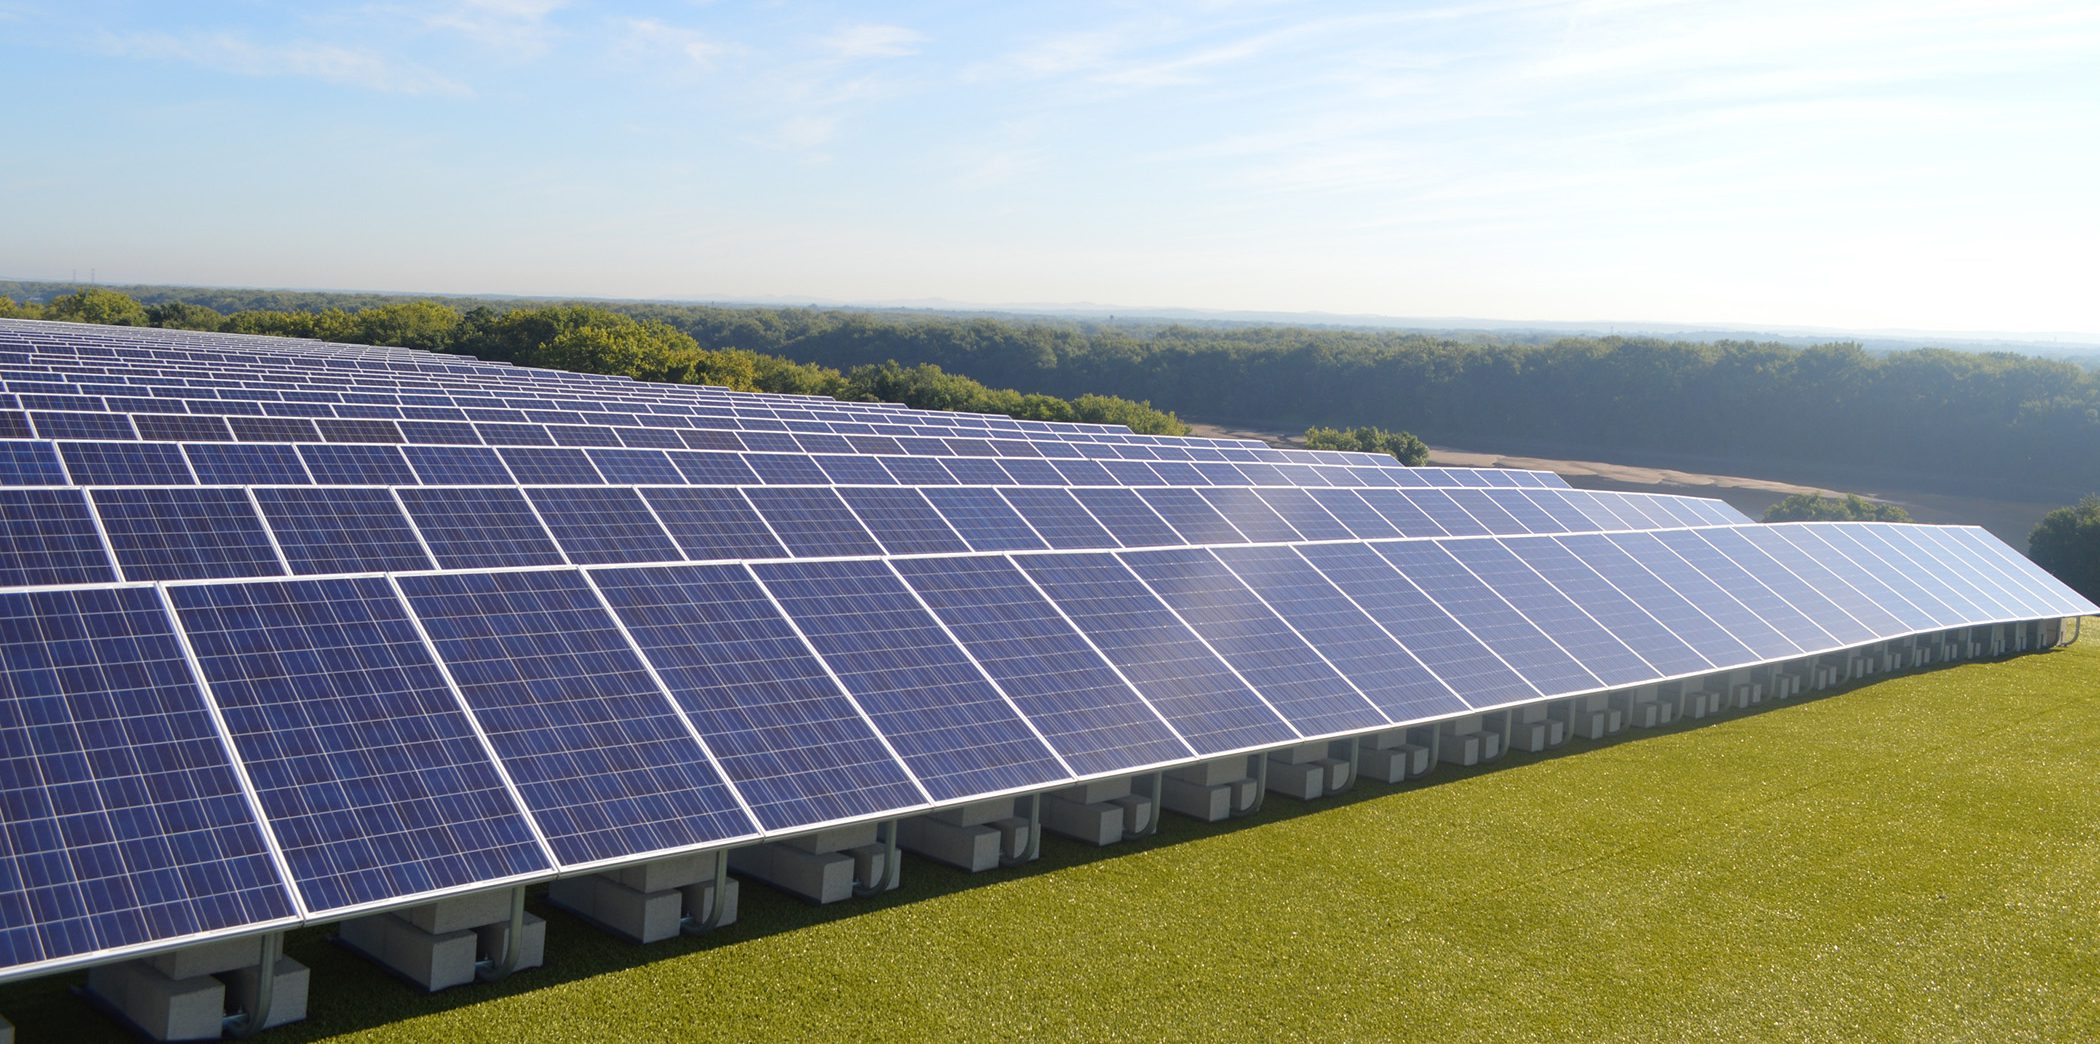 Hartford_landfill_solar_panels